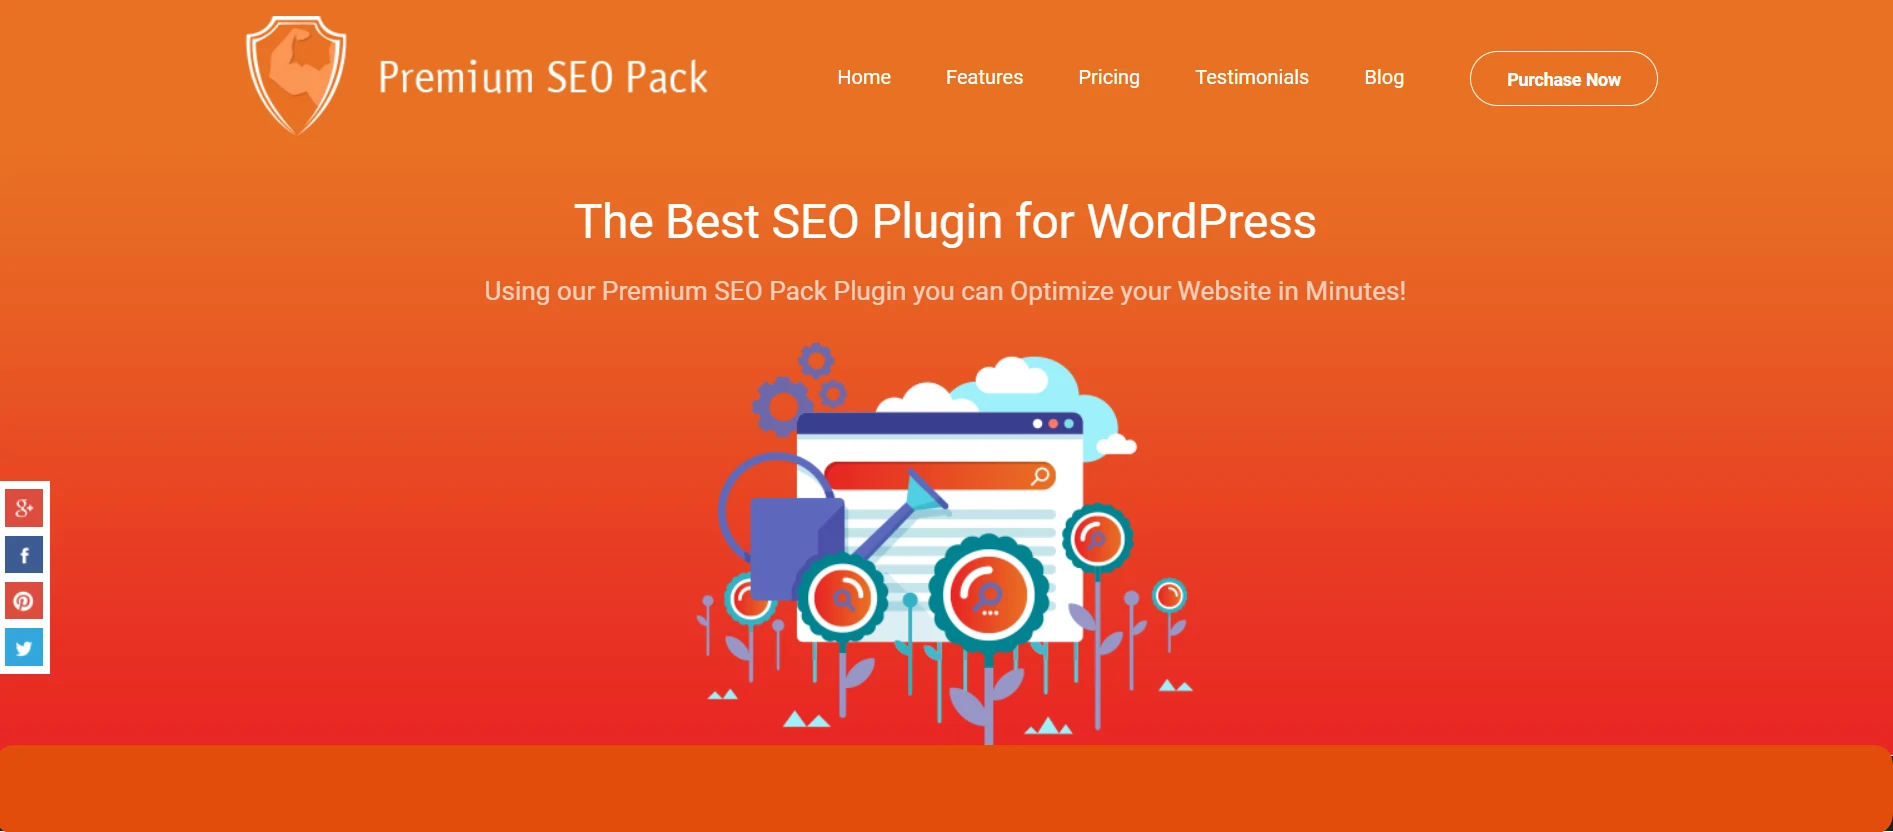 Premium SEO Pack WordPress Plugin